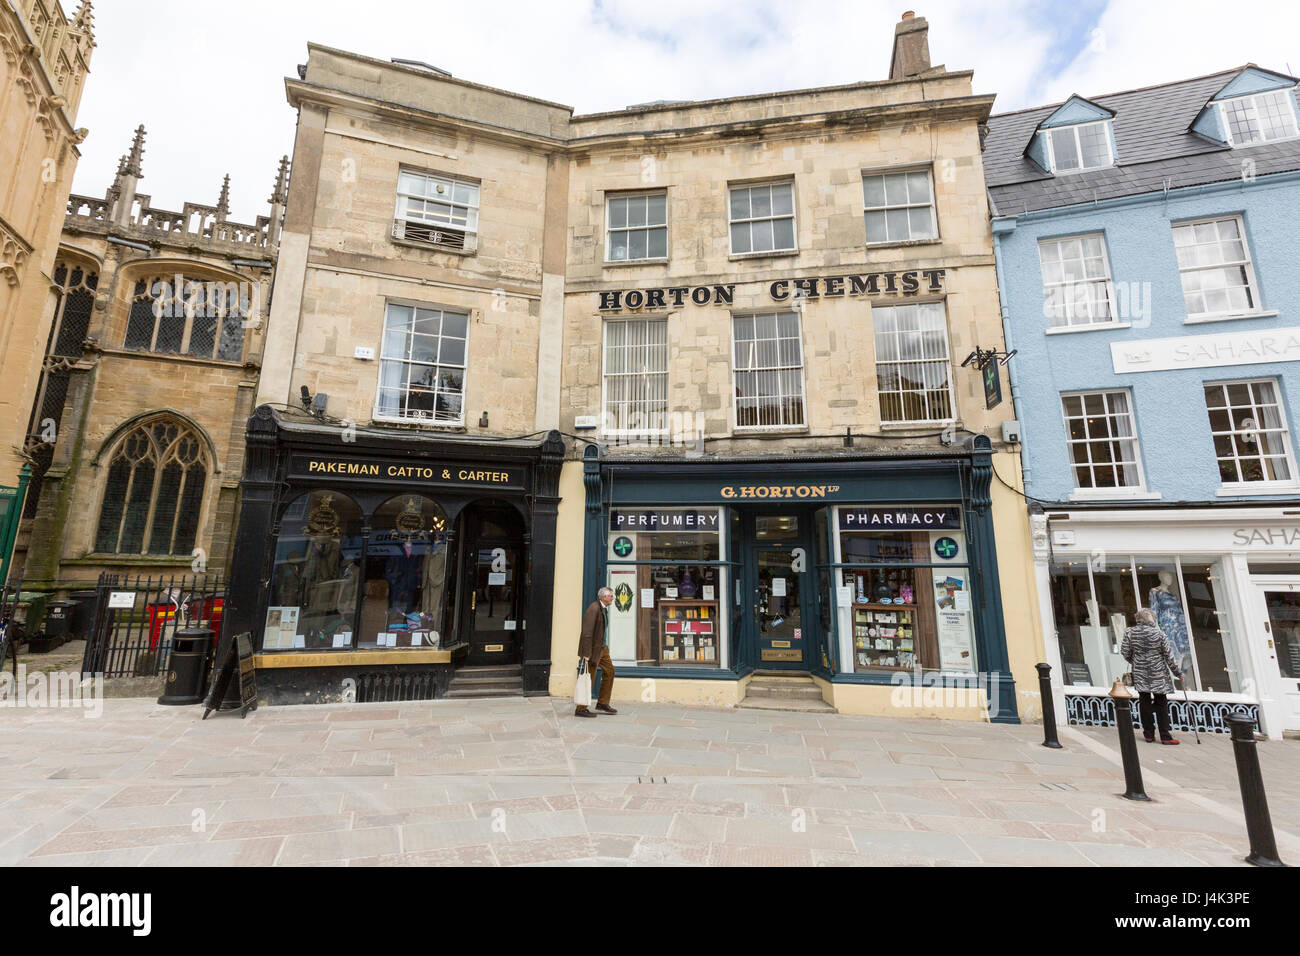 Pakeman Catto & Carter, magasin de vêtements pour hommes, et Horton chimiste et de pharmacie de la Place du marché, Cirencester, Gloucestershire, Angleterre Banque D'Images